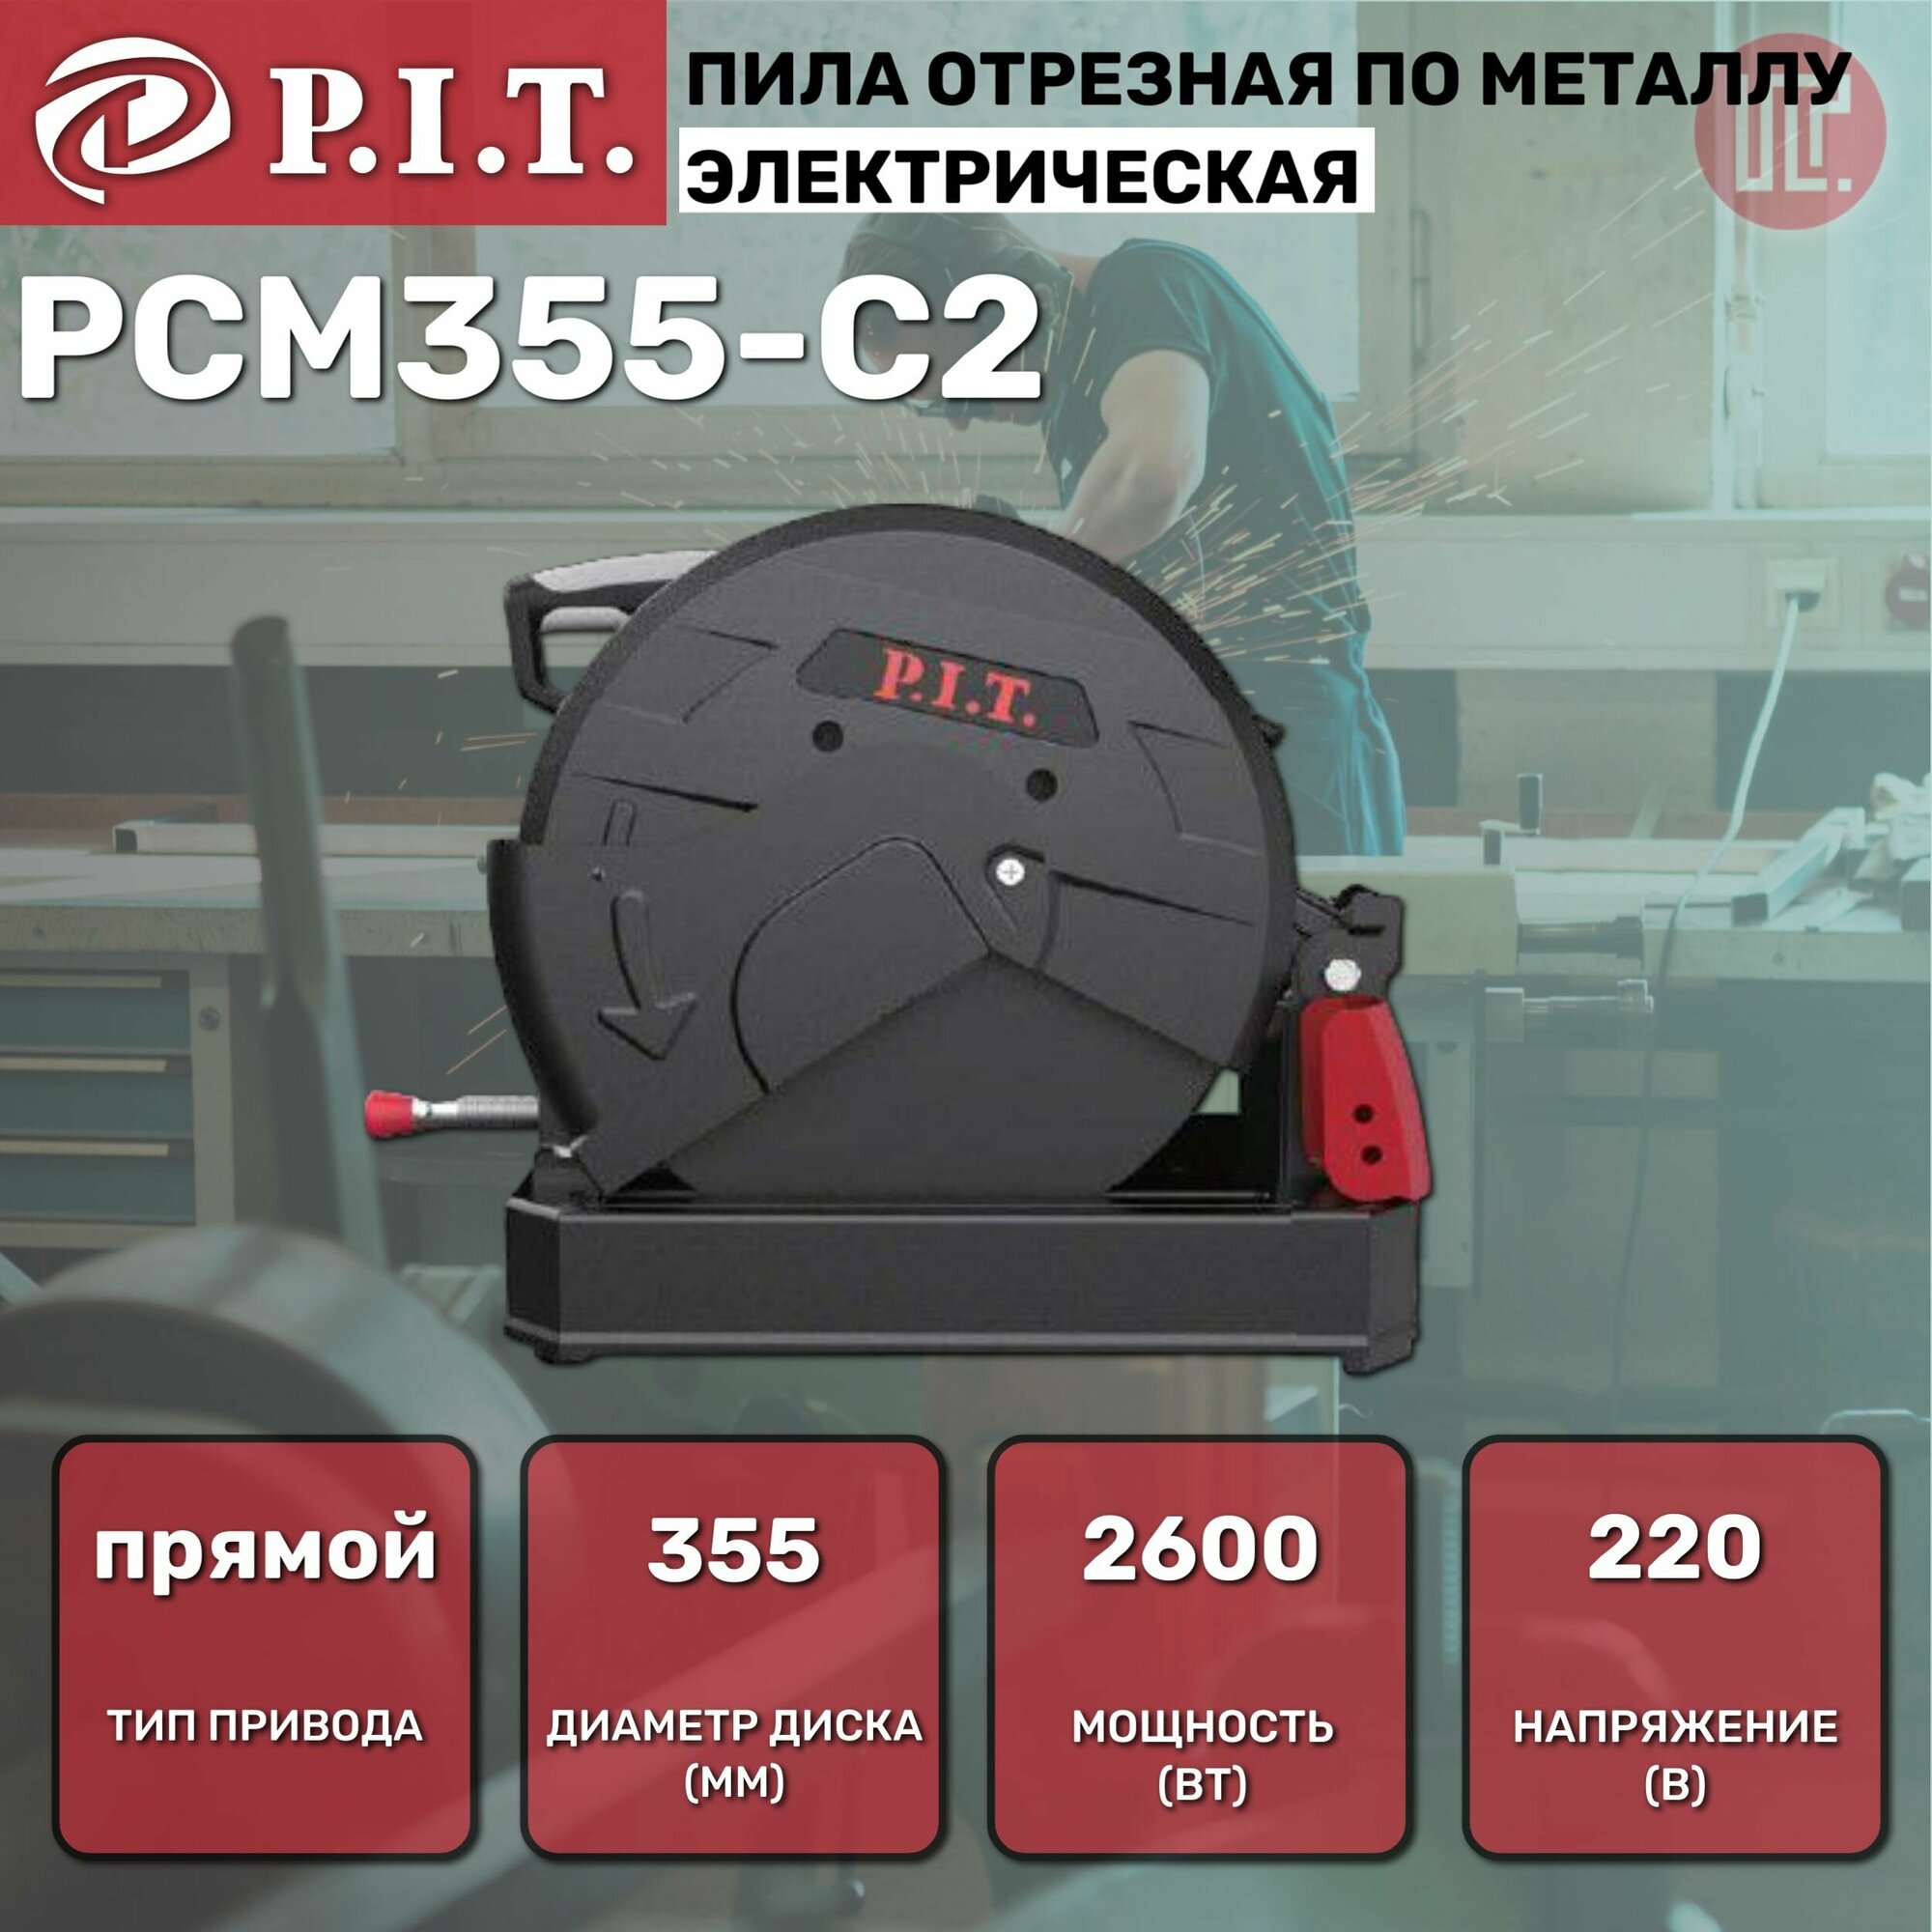 Пила отрезная по металлу P.I.T. PCM355-C2 2600Вт, 355мм, 3800rpm, прямой привод, 220В